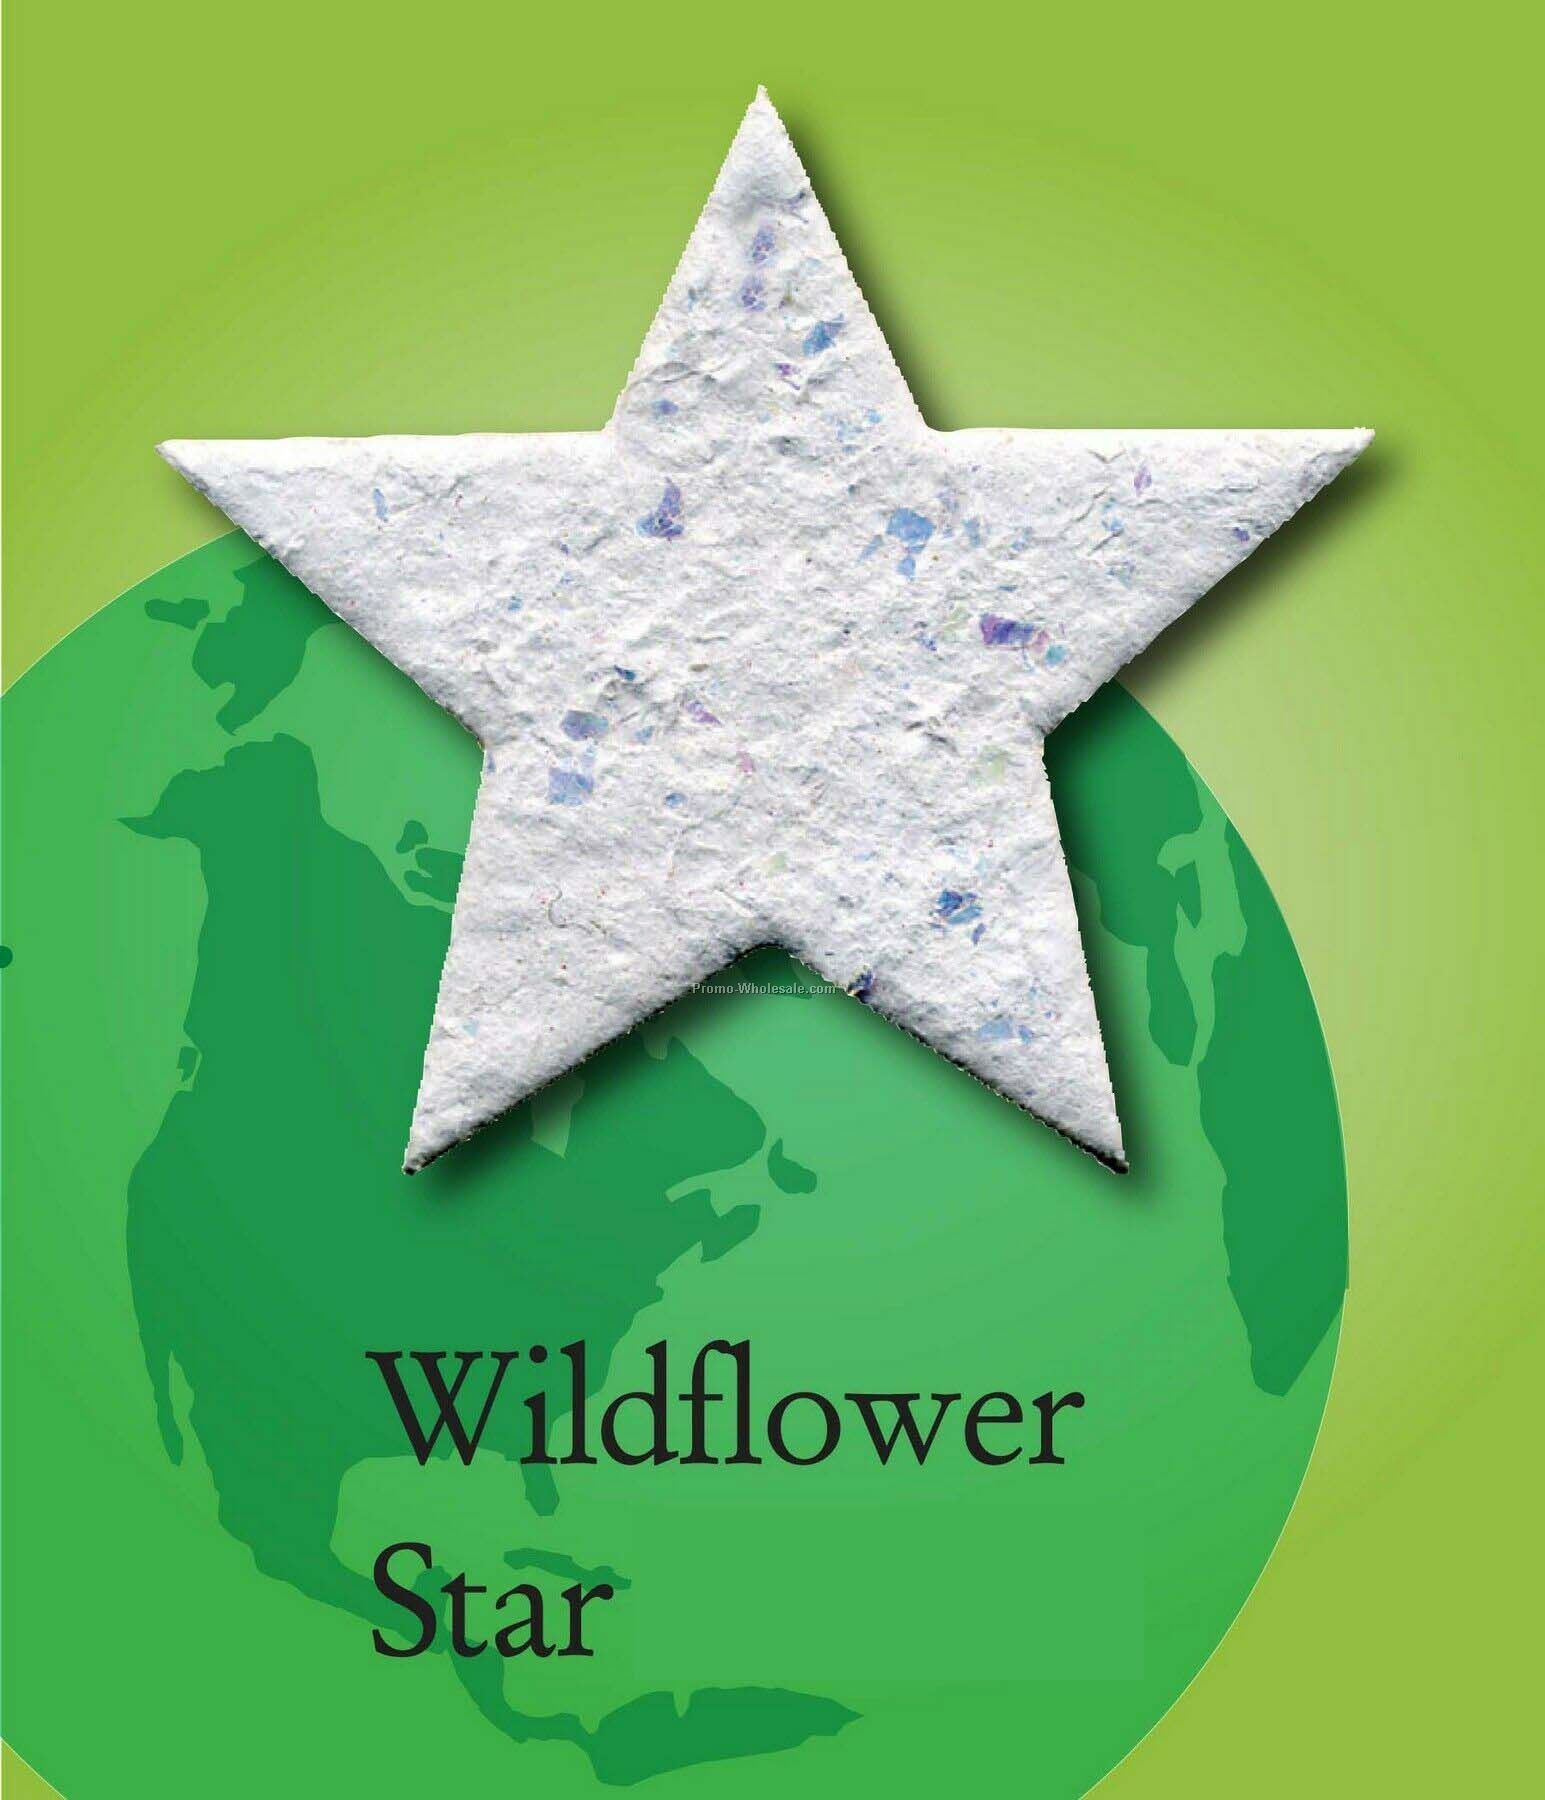 Wildflower Star Handmade Seed Plantable Mini